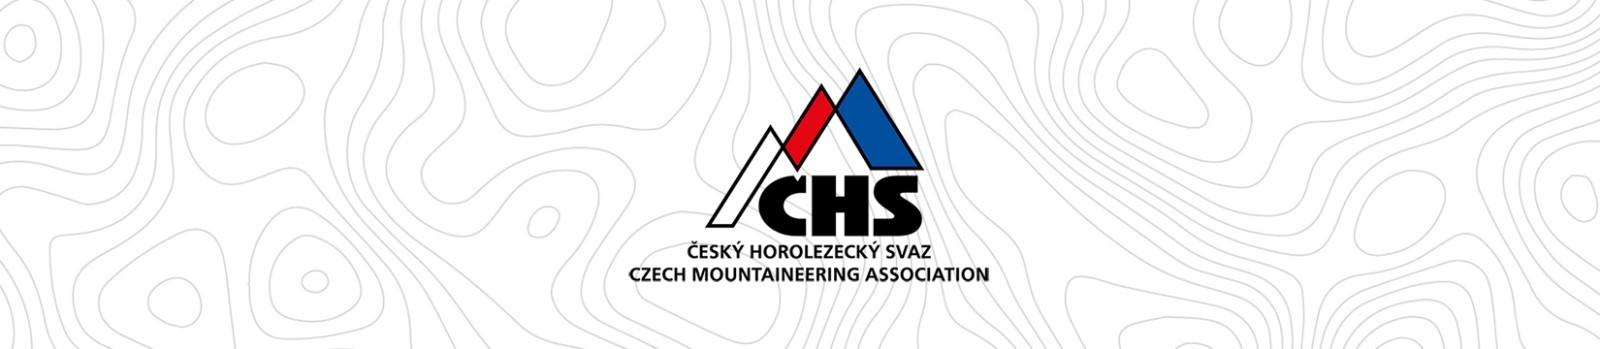 Znáte Český horolezecký svaz?